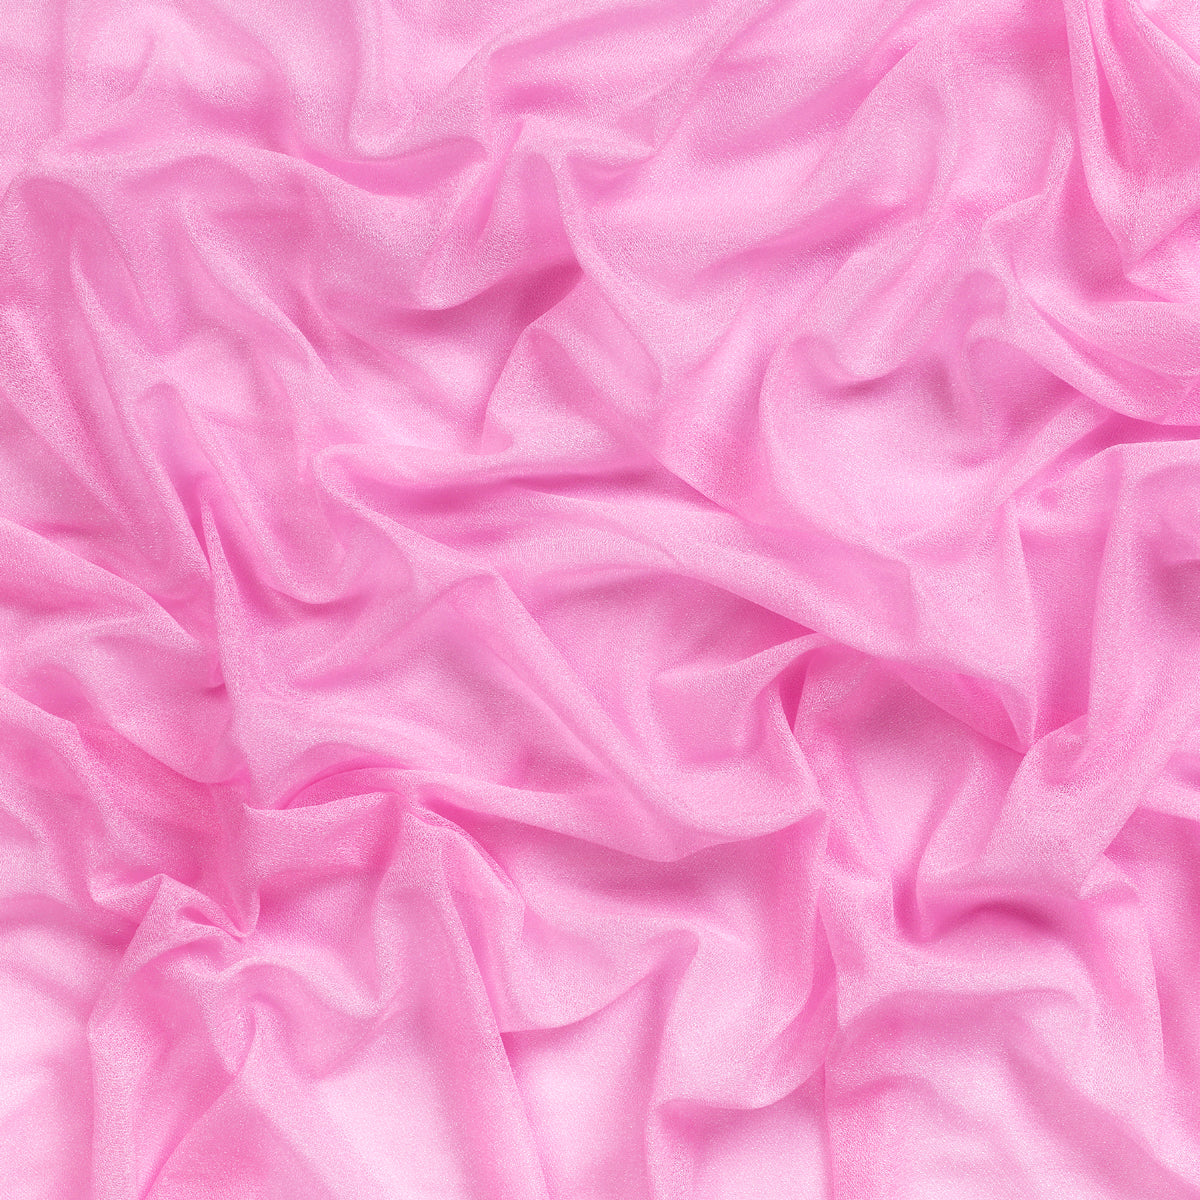 Bubblegum Pink,97a1a271-02ea-4e8e-9d9e-b4e8a6a06709